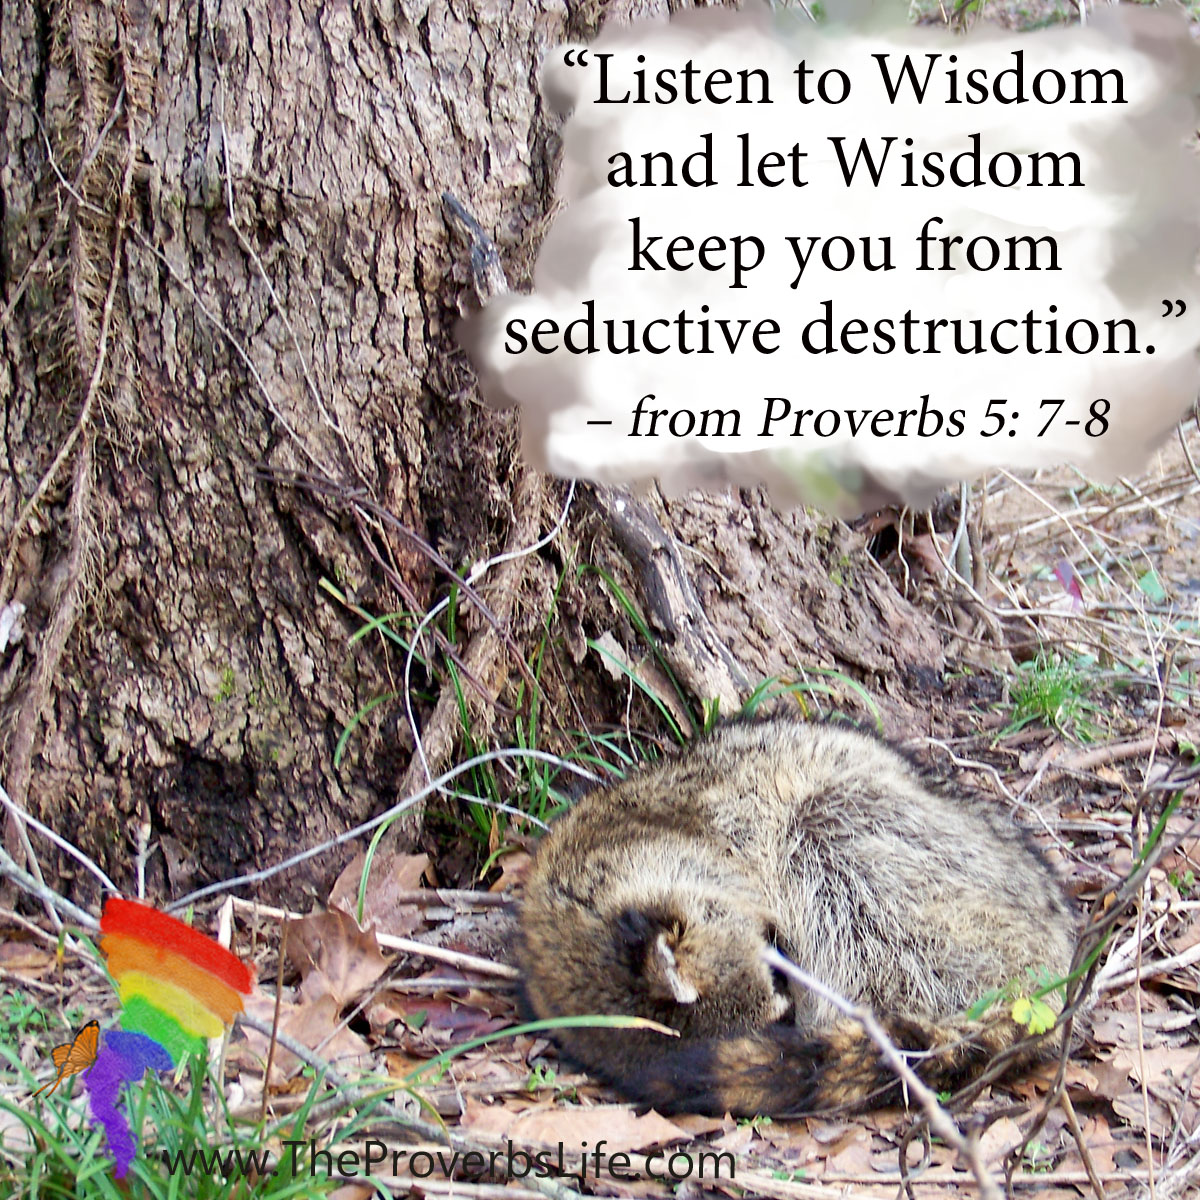 Scripture Focus - Proverbs 5:7-8